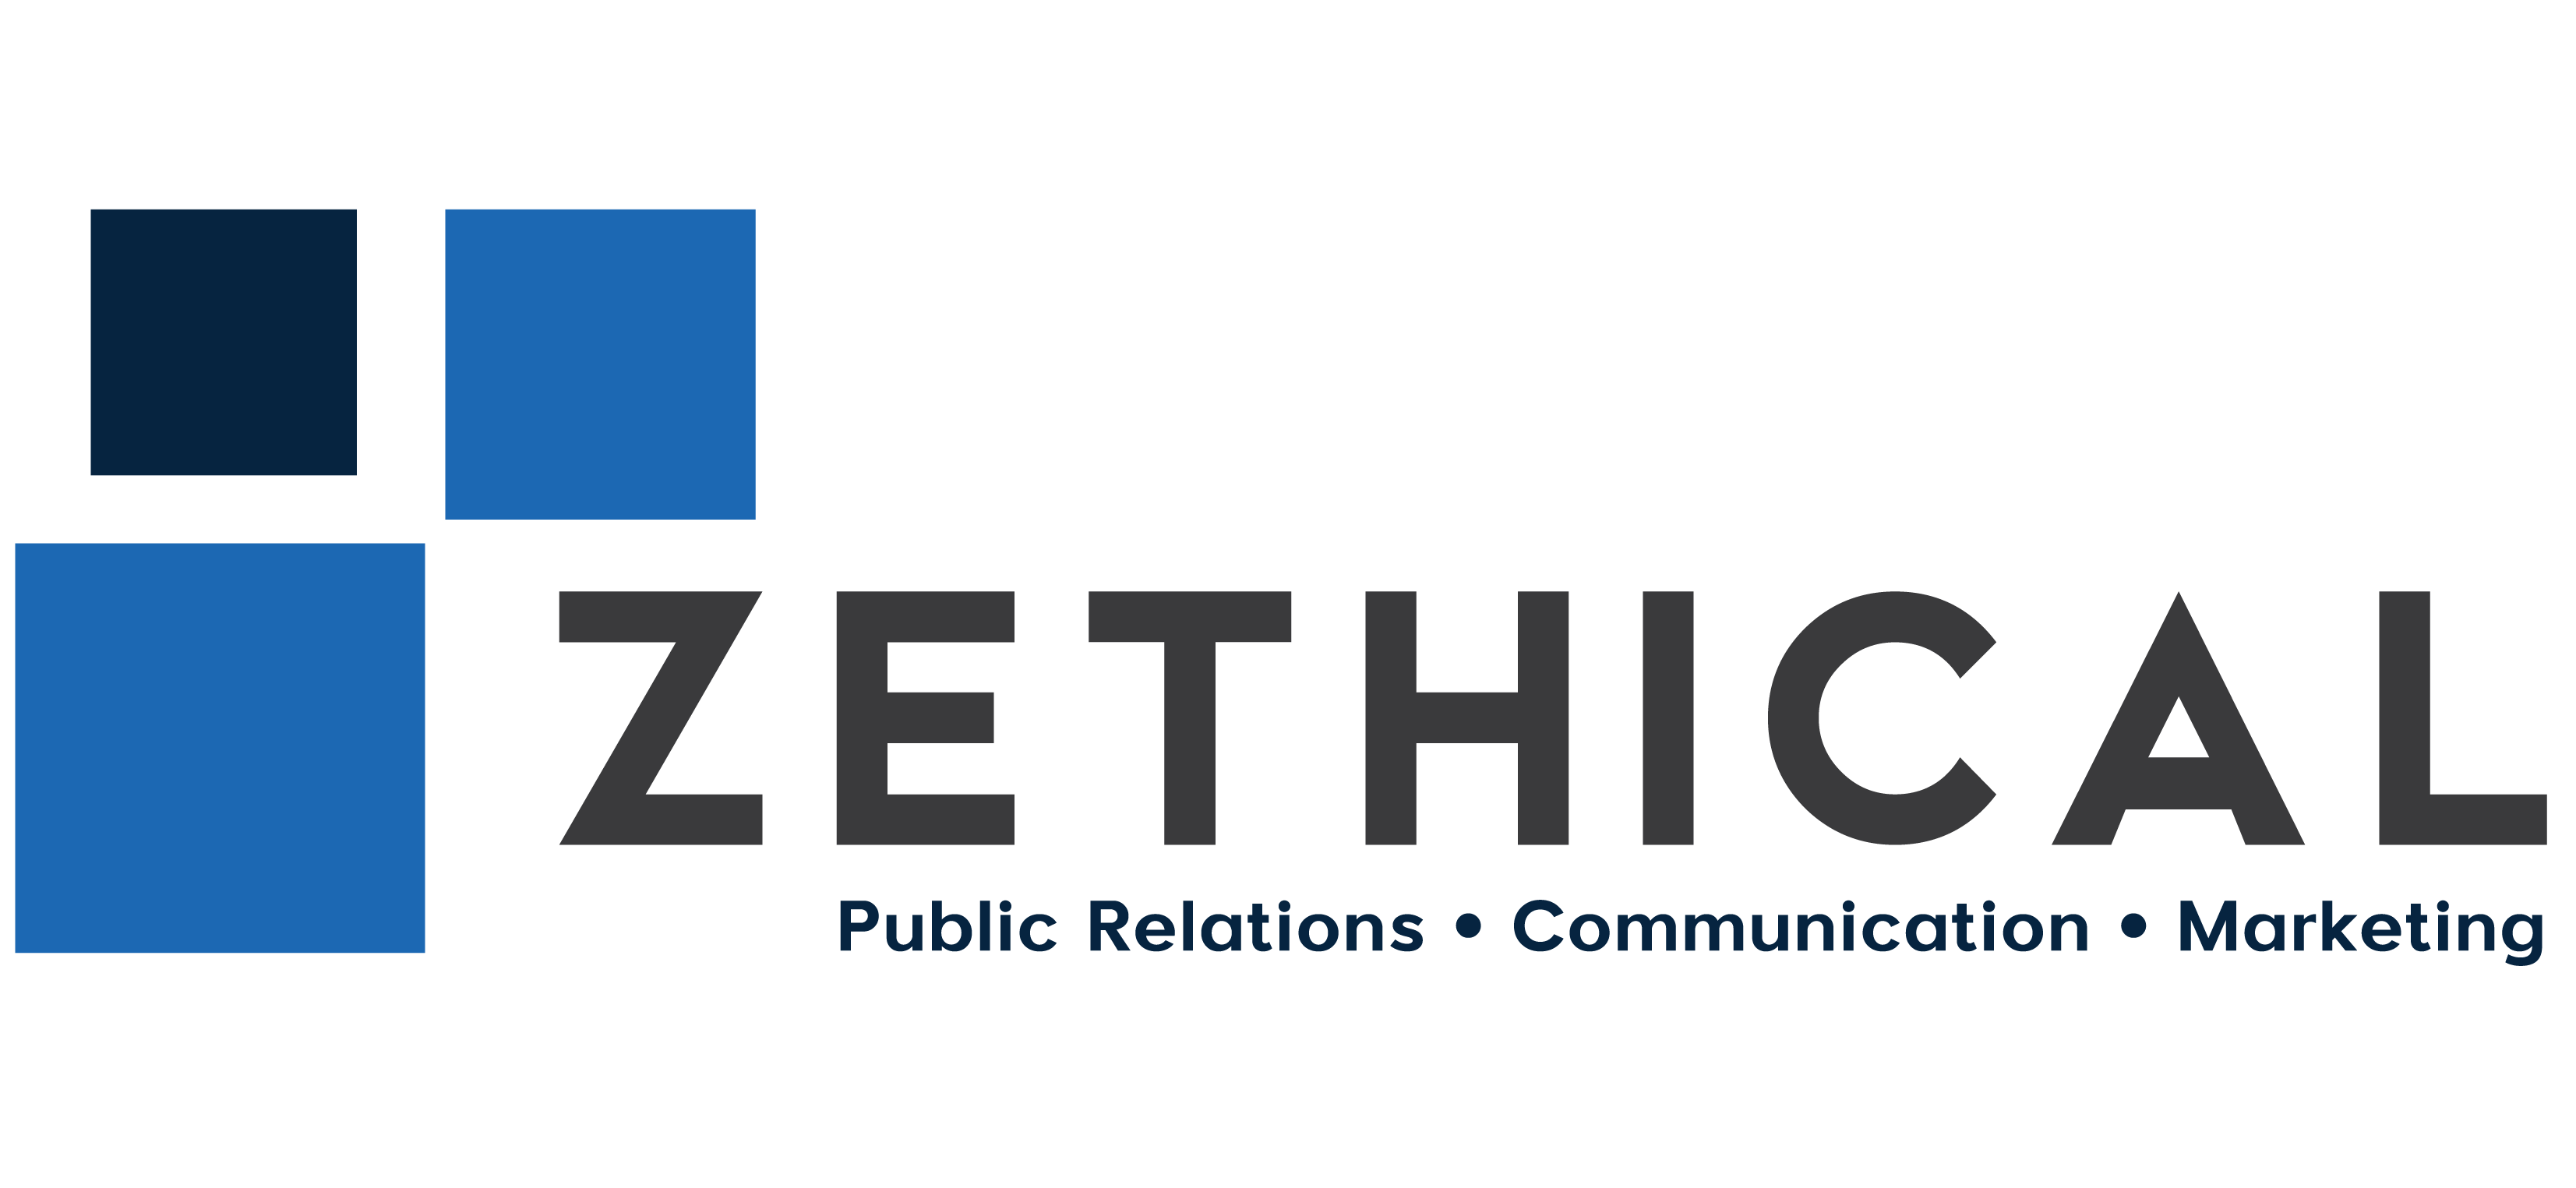 Zethical logo